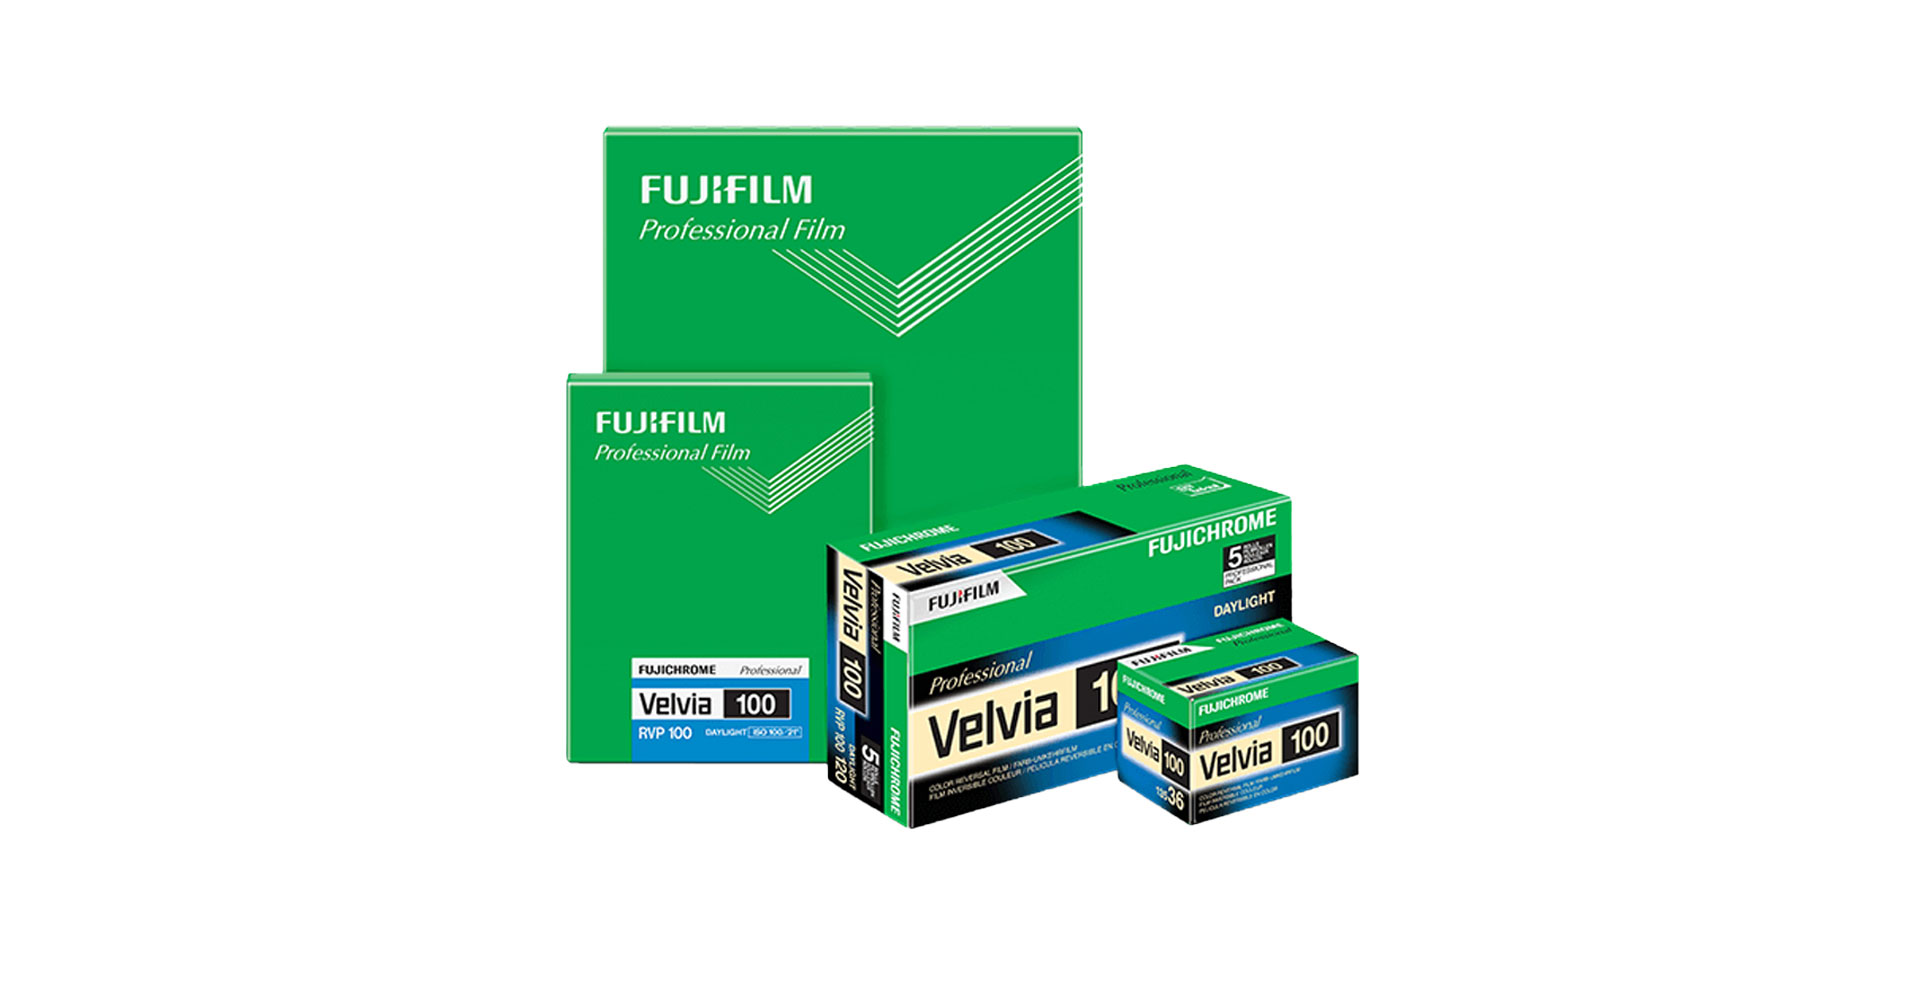 Fujichrome VELVIA 100 ถูกยุติการผลิตในสหรัฐอเมริกา เนื่องจากมีสารเคมีต้องห้าม